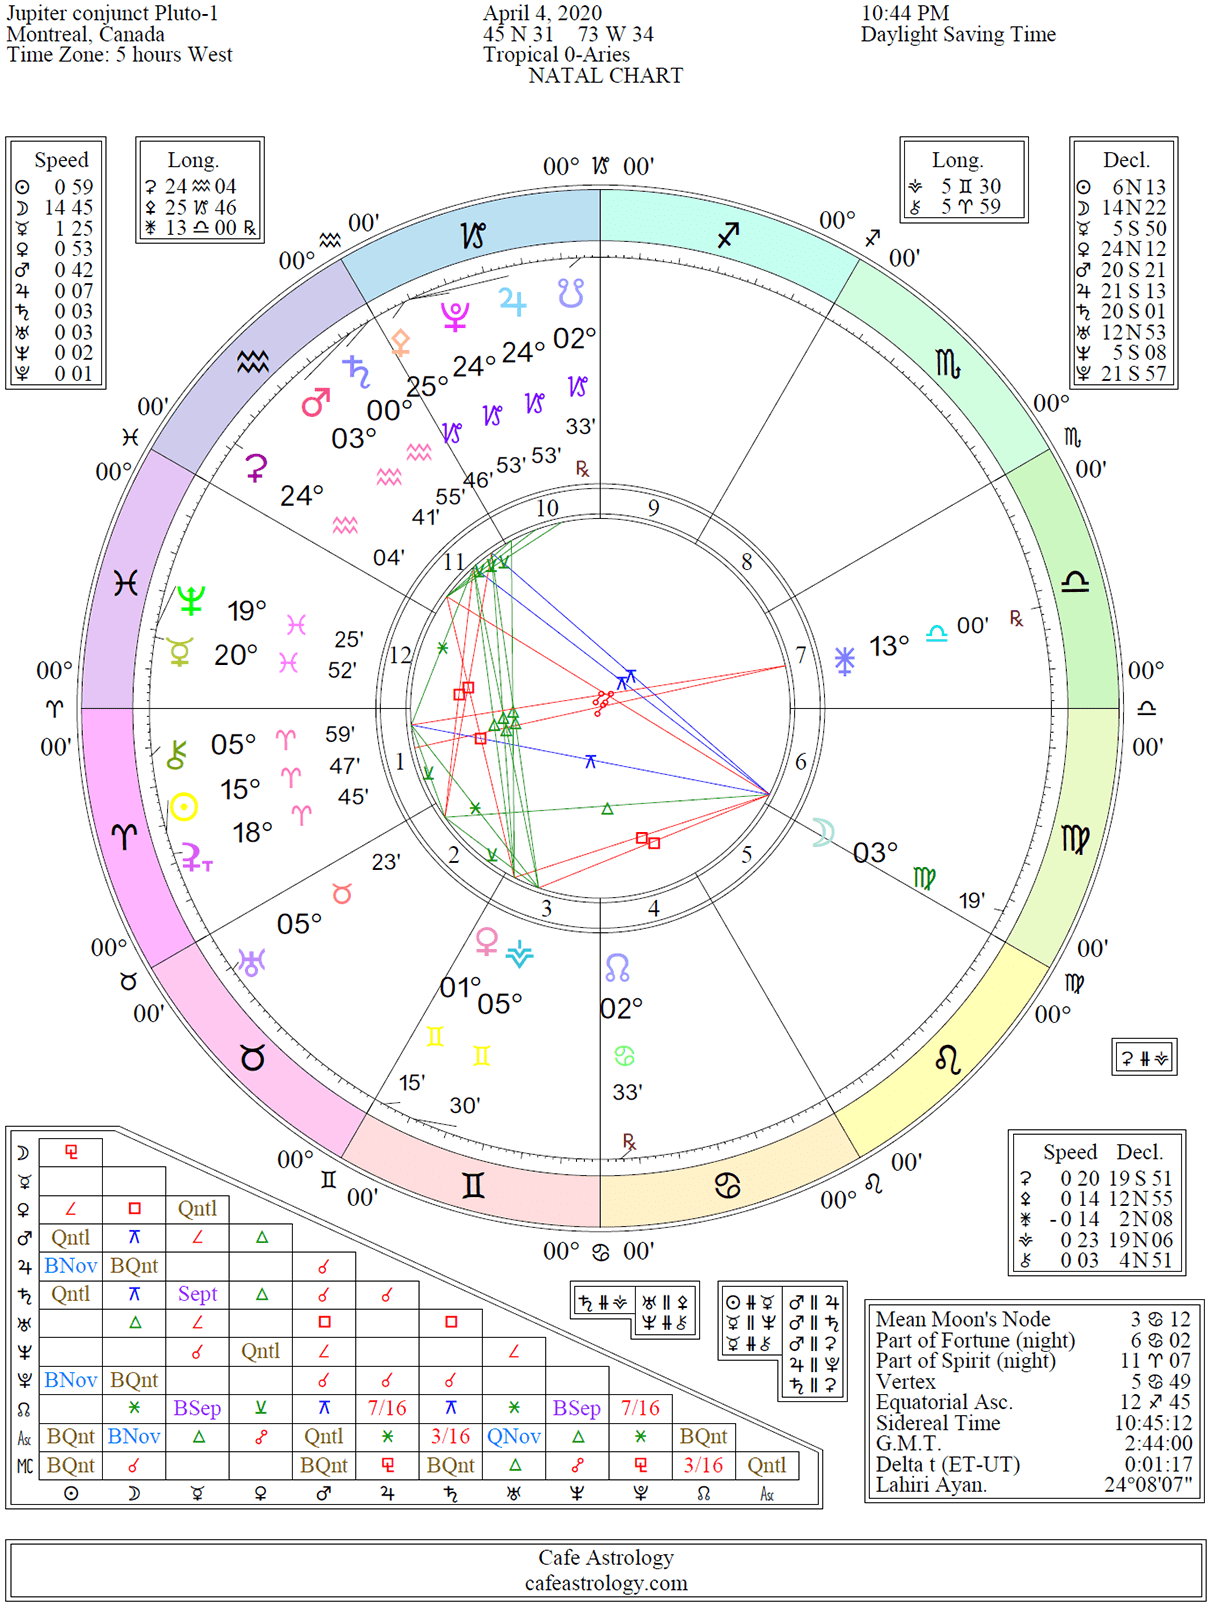 Jupiter conjunct Pluto in Astrology | Cafe Astrology .com